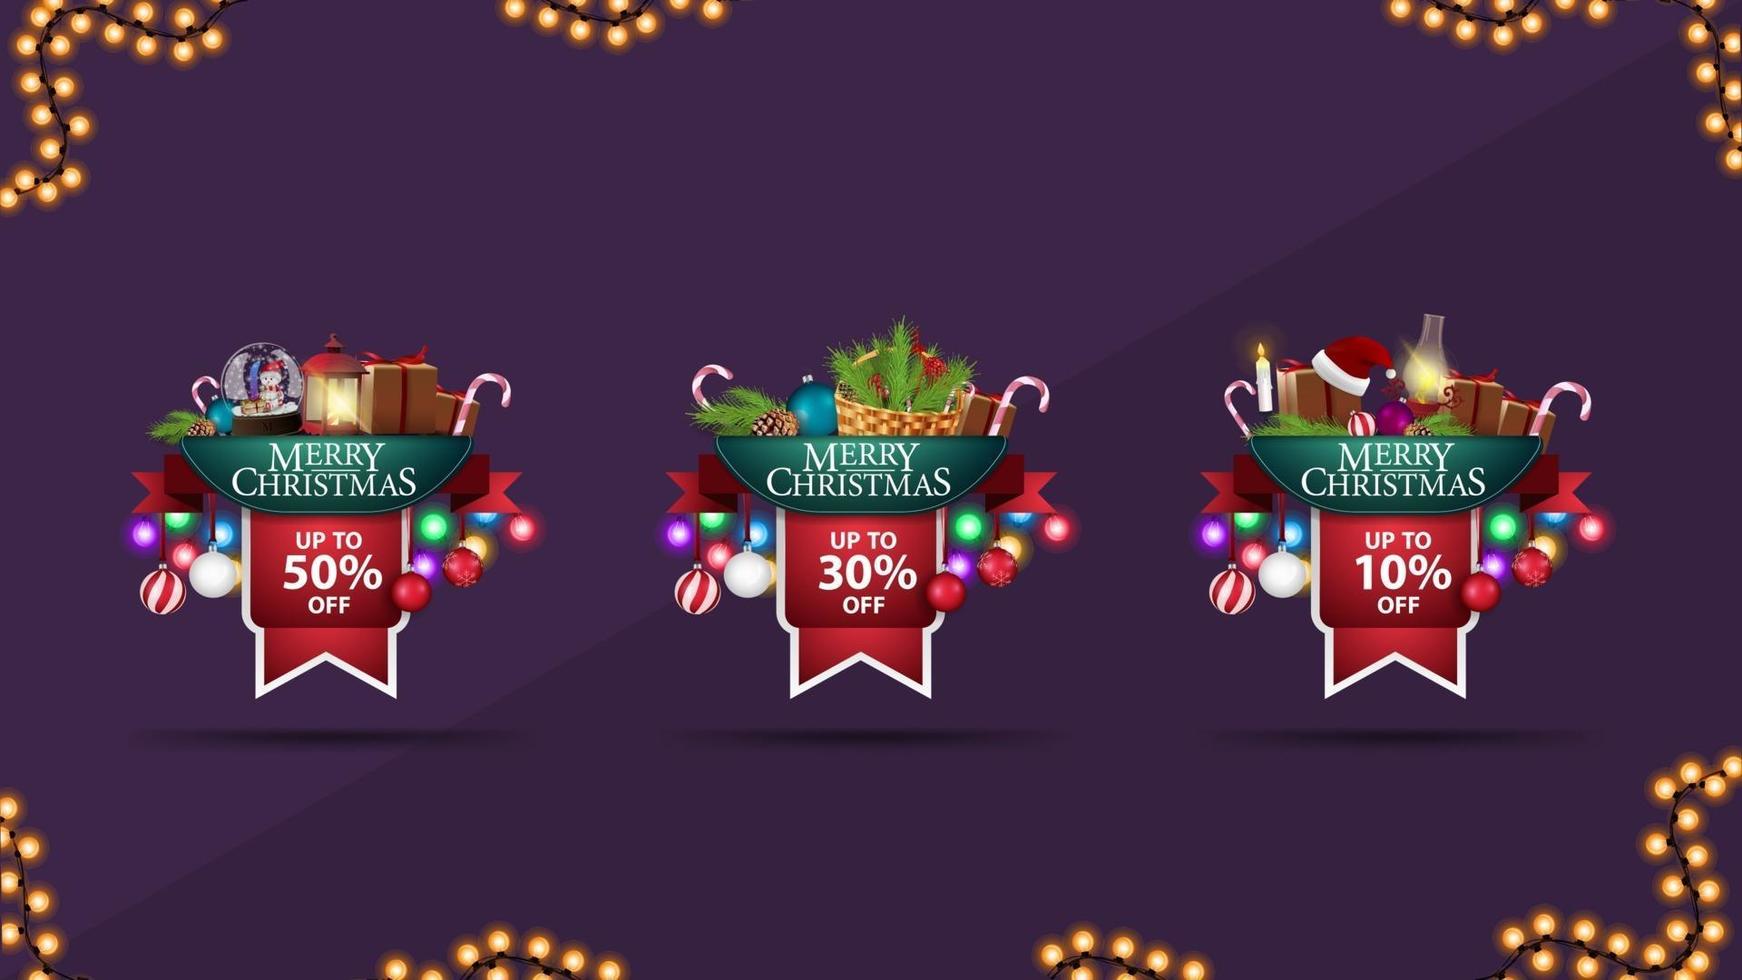 colección de pegatinas 3d volumétricas navideñas en forma de cintas decoradas con regalos, guirnaldas y elementos navideños. vector